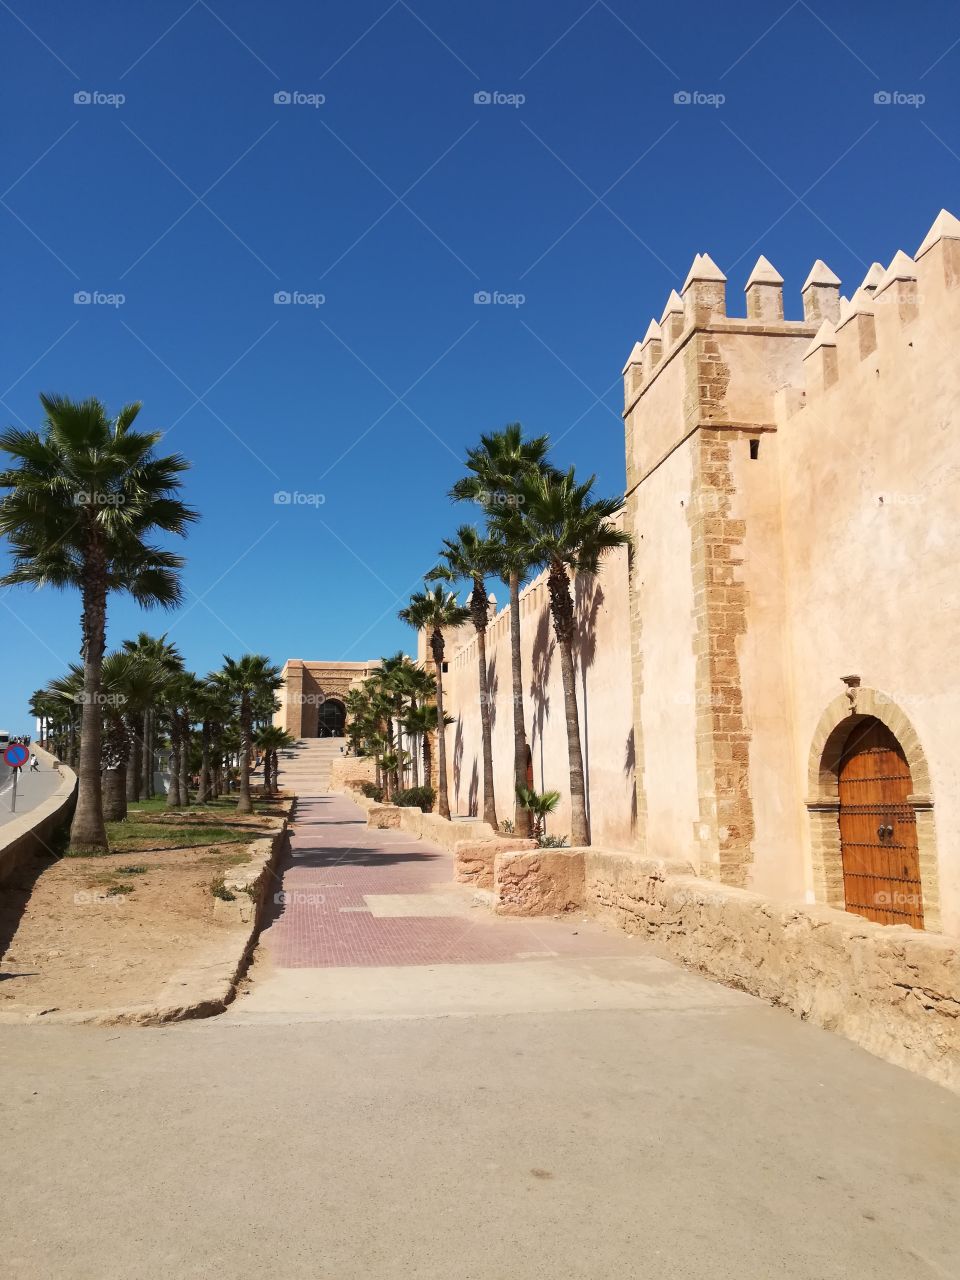 Rabat Morocco